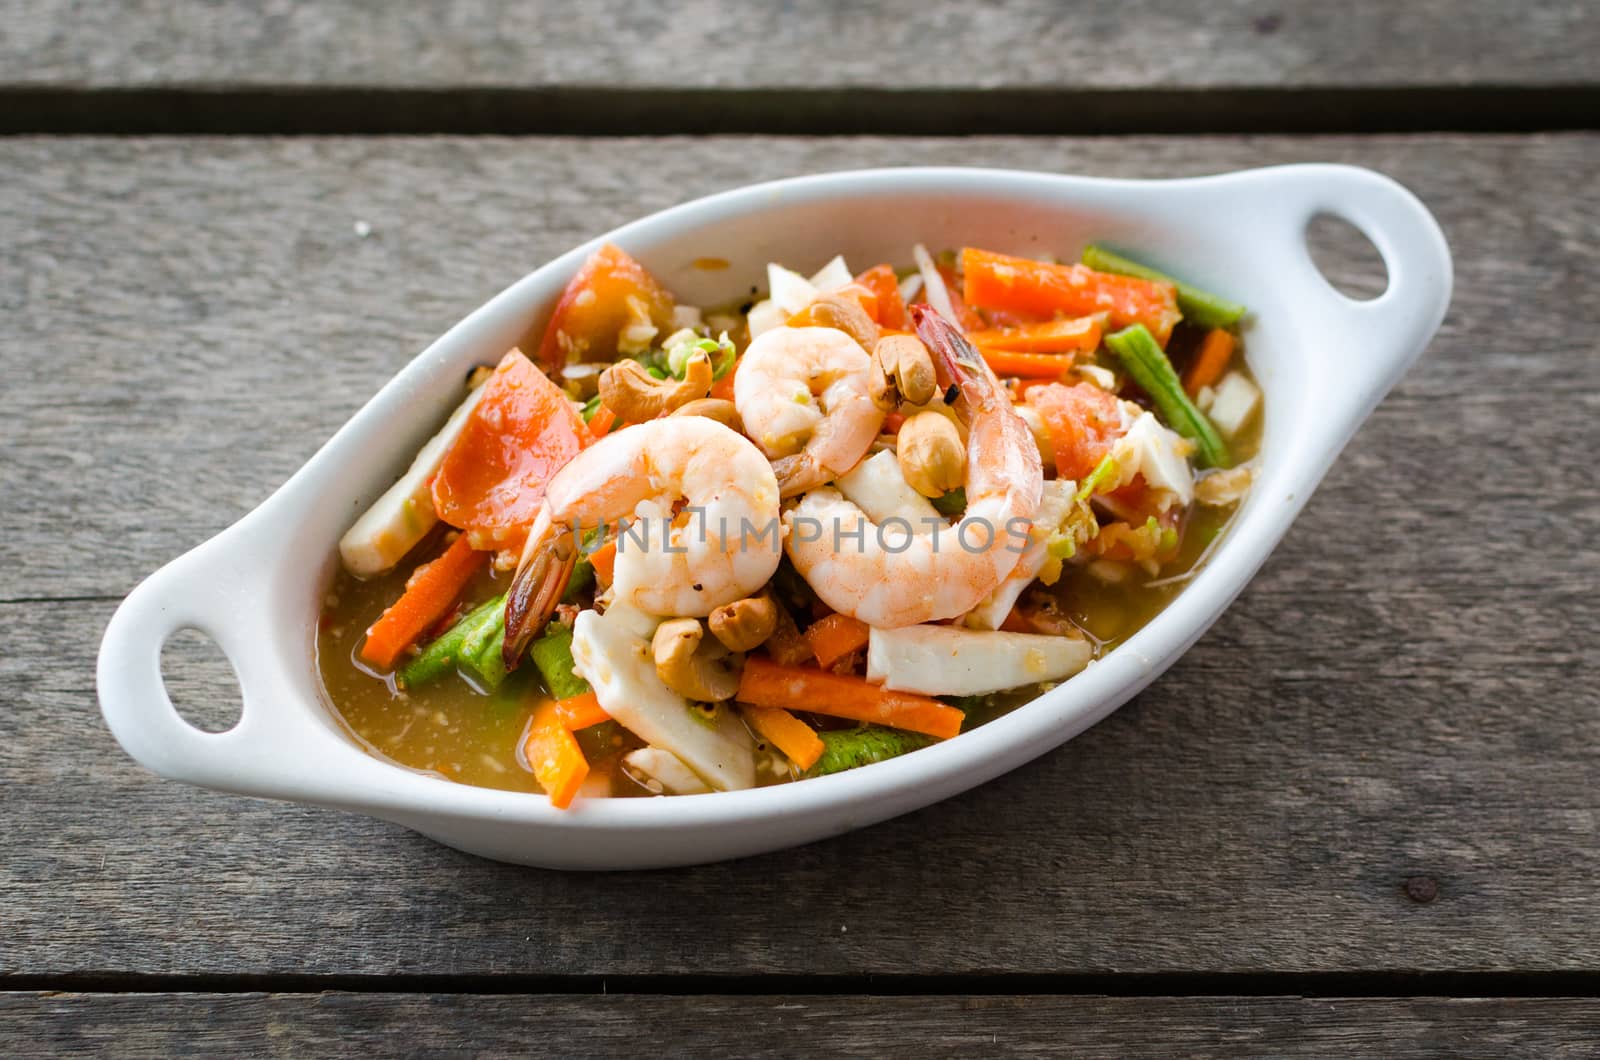 Shrimp salad thai cuisine spicy delicious